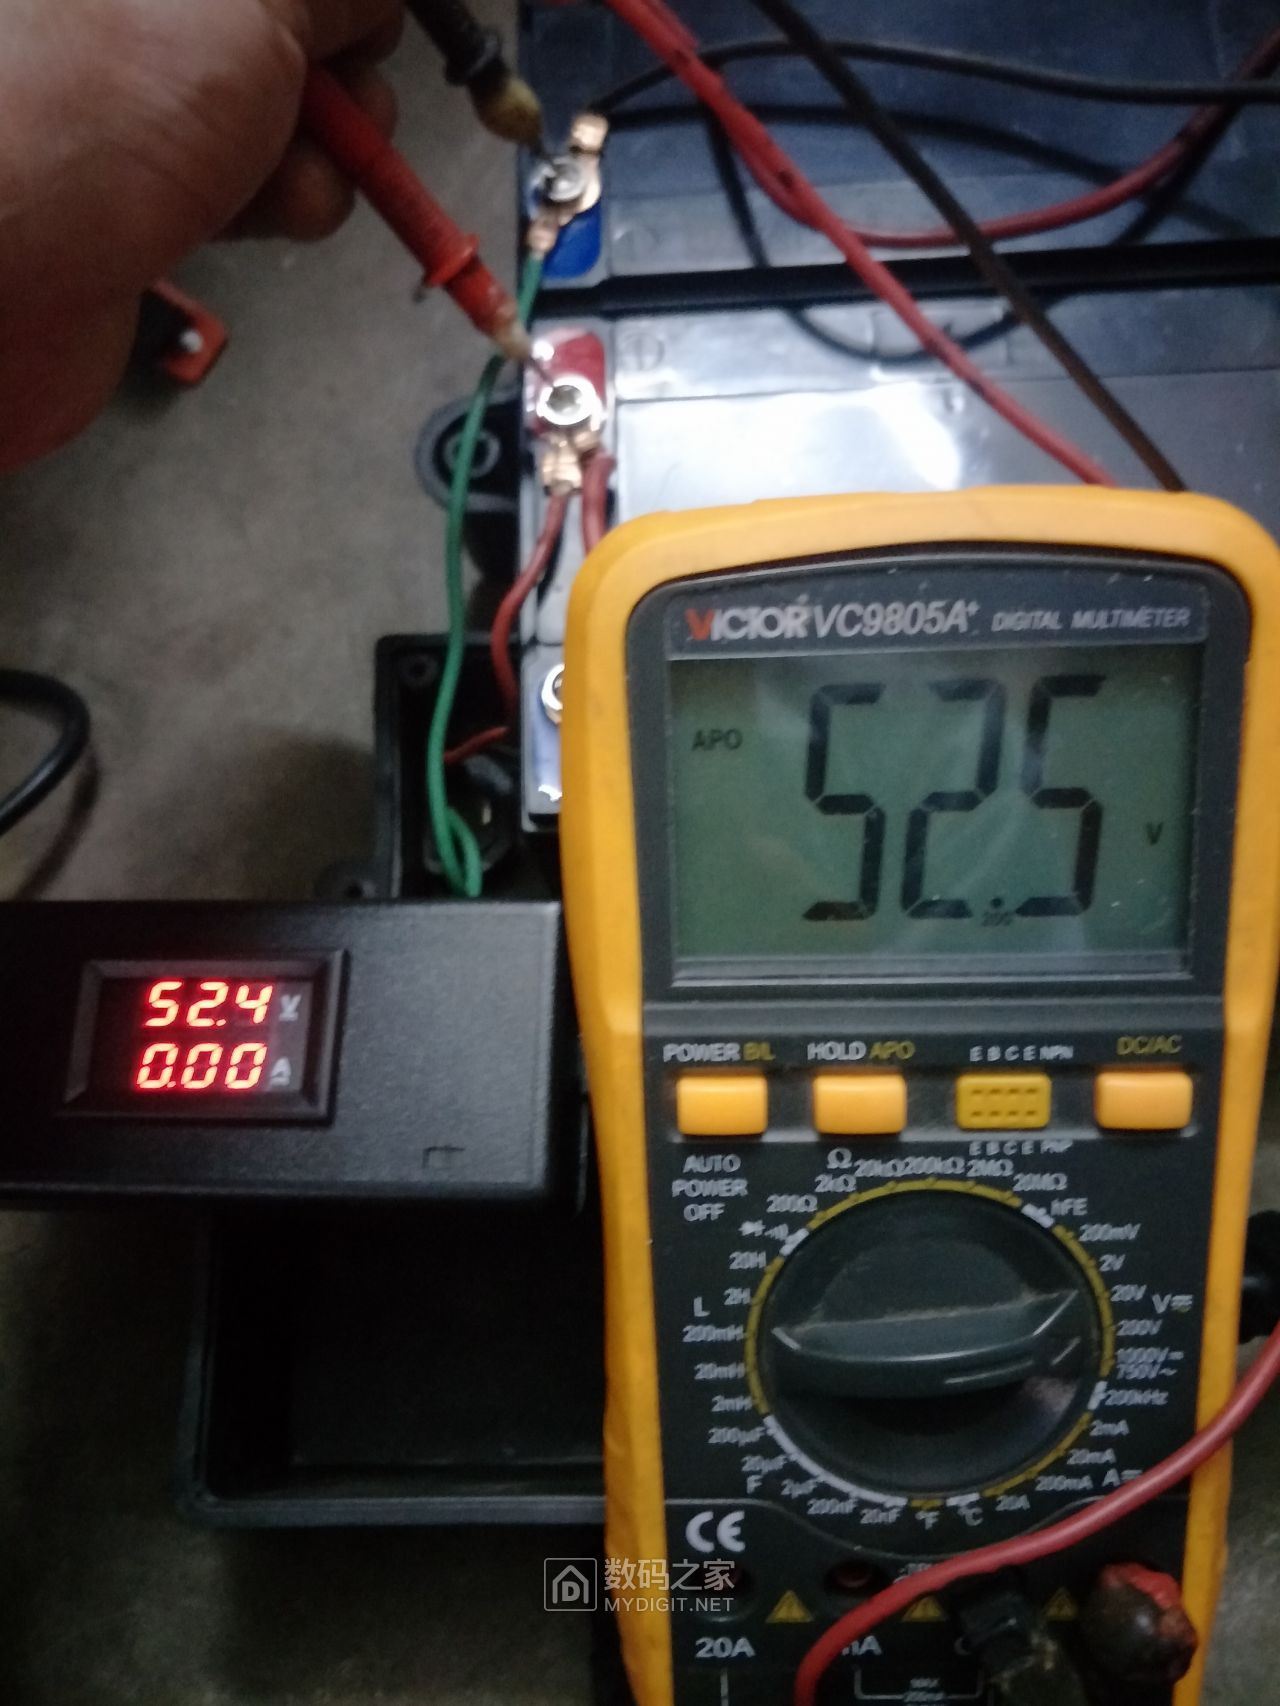 测试仪测试新电池电压.jpg